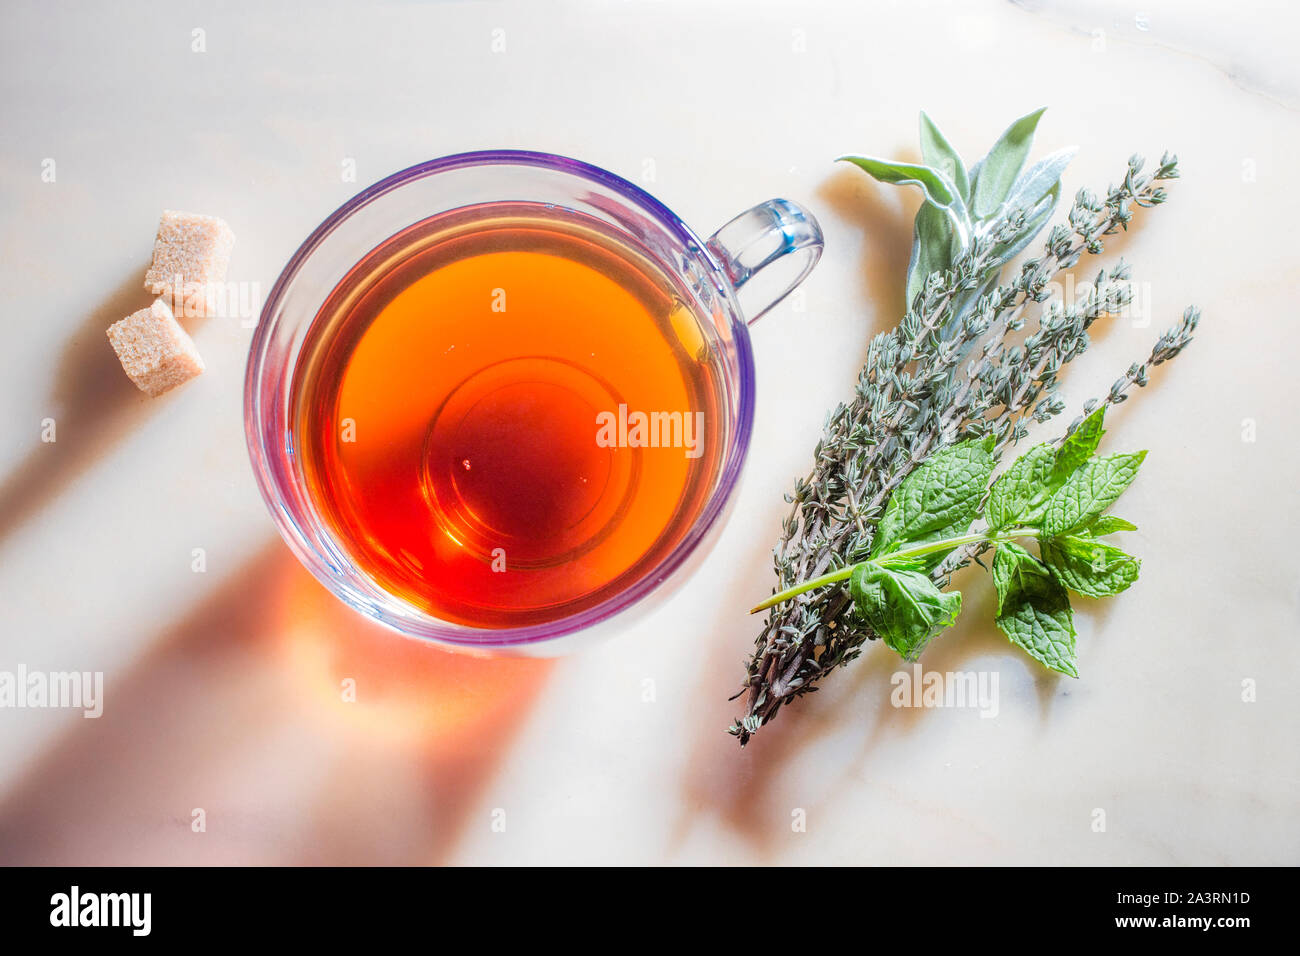 Bild von Glas Tasse mit Tee, Kräuter und Zucker auf Marmor Oberfläche. Stockfoto